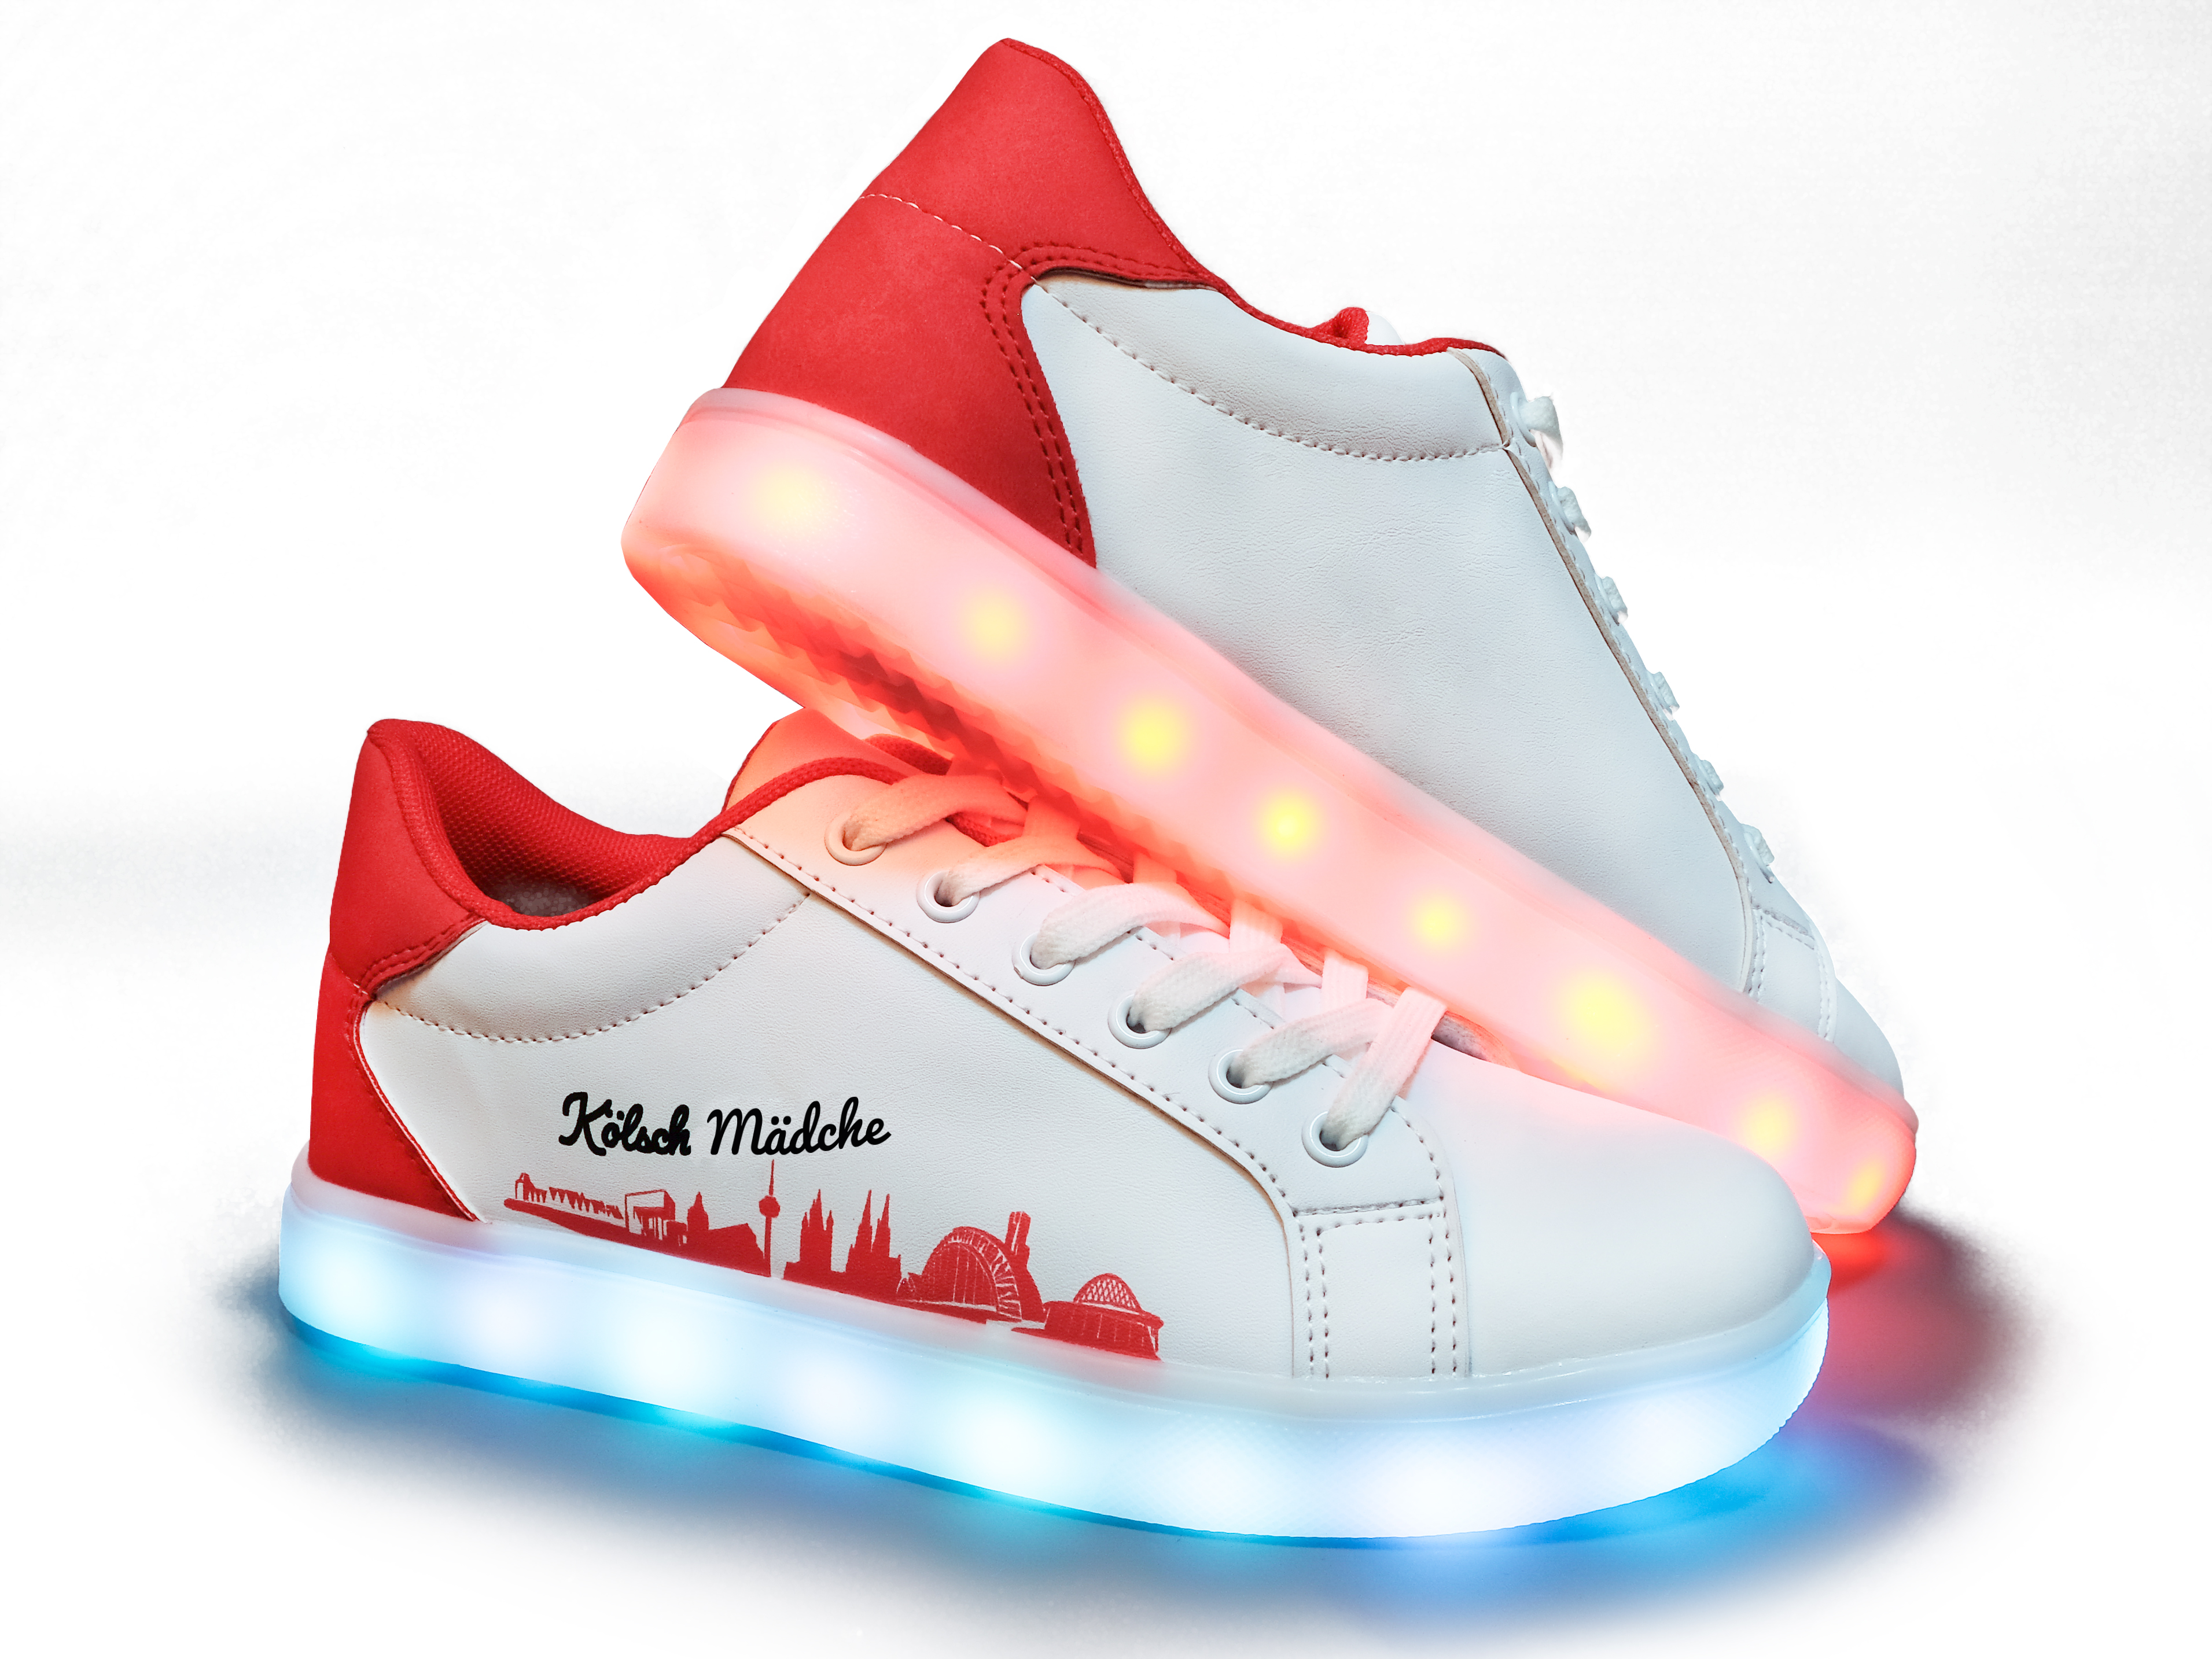  Kölsch Mädche Schuhe LED in den Größen 36-42 erhältlich